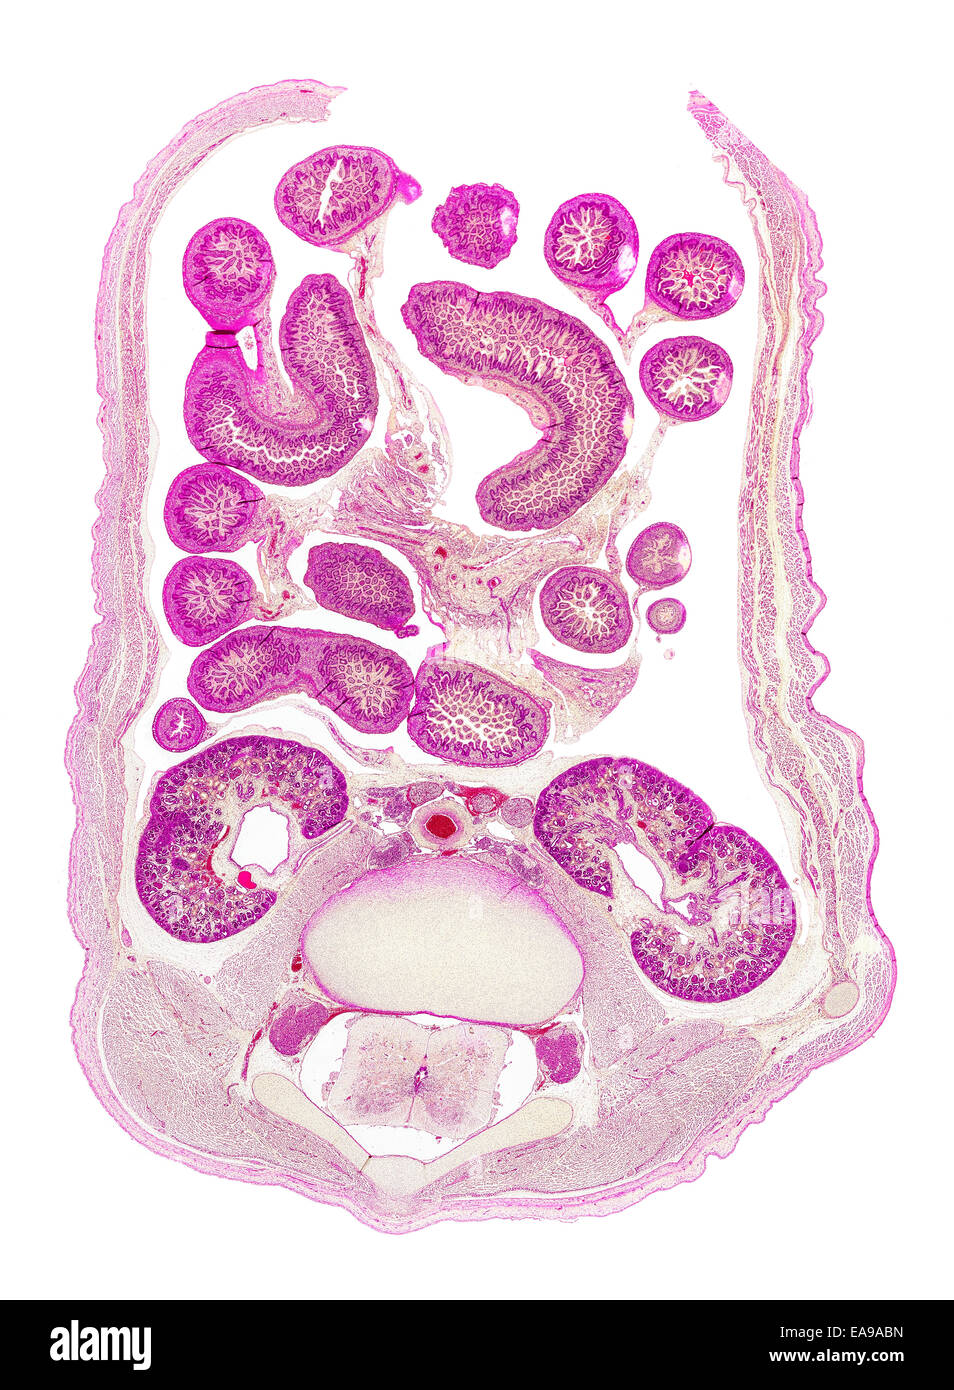 Foetus humain abdomen section Vitrail montrant structures générales Banque D'Images